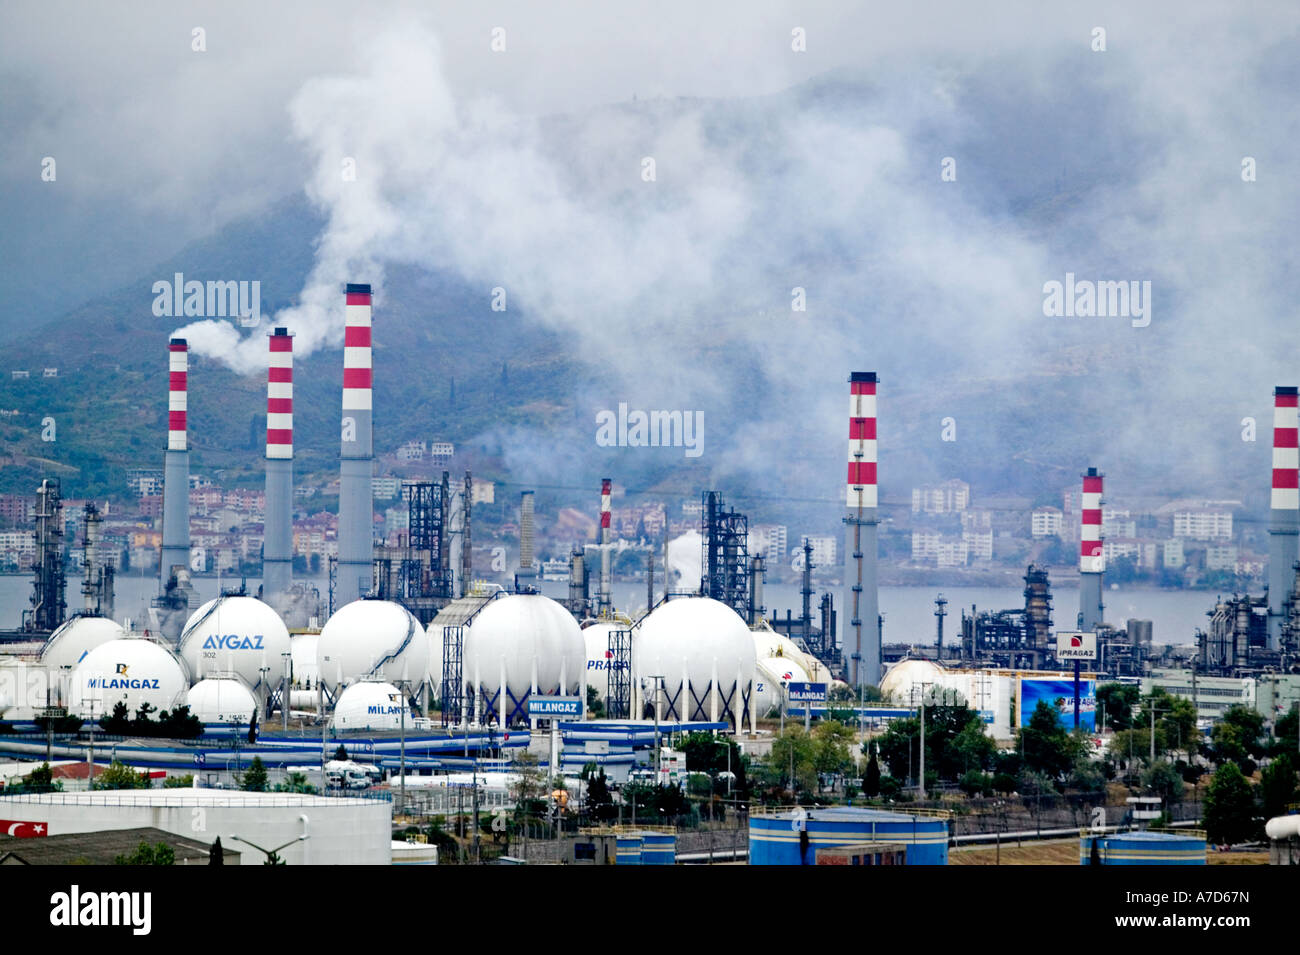 La pollution d'usine pétrochimique de Izmit près de Istanbul Turquie Banque D'Images